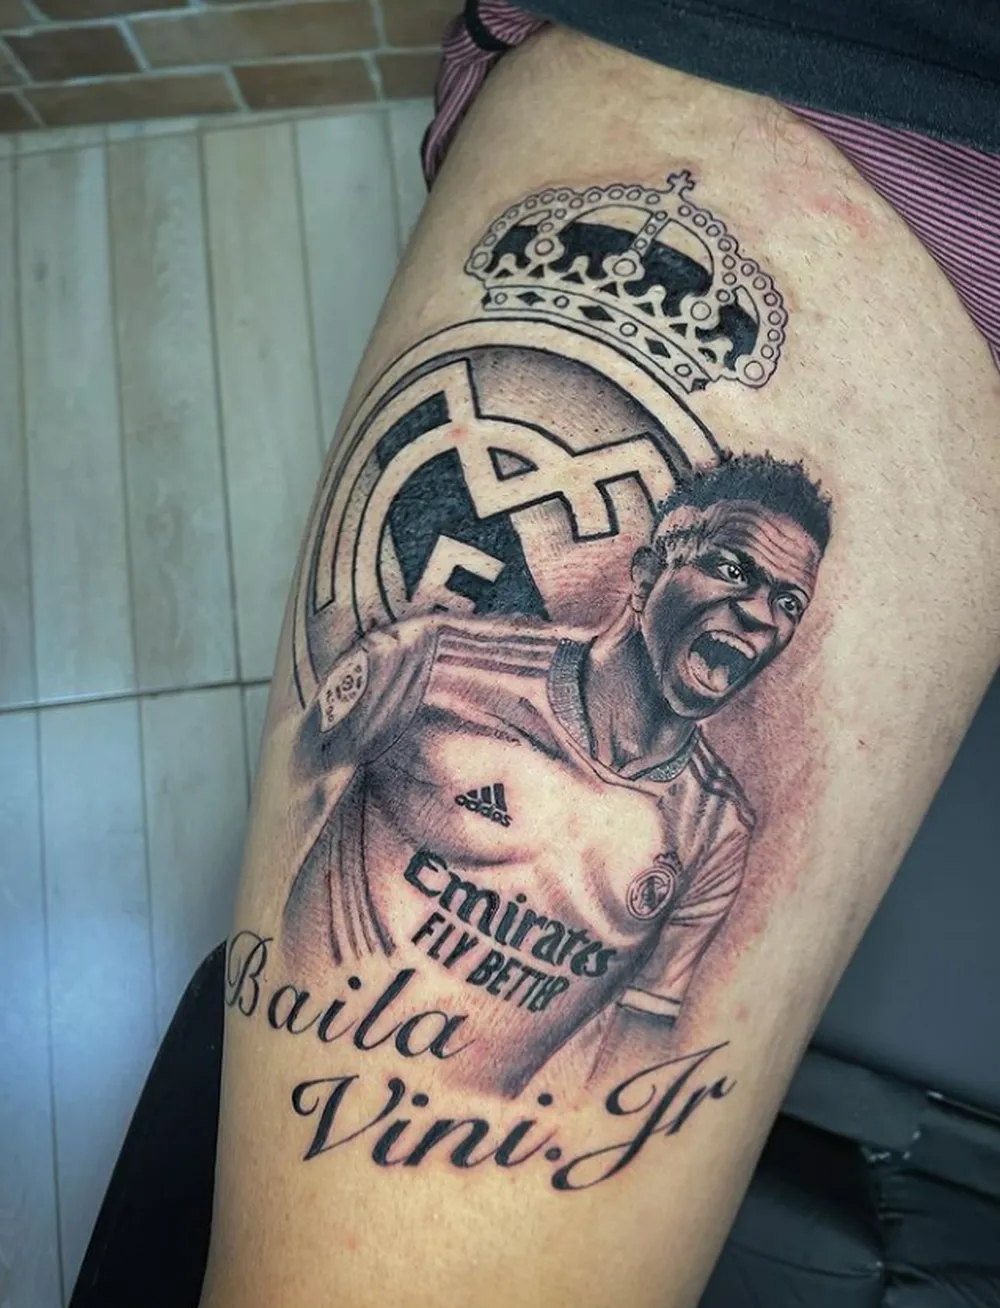 巴西纹身艺术家免费为球迷文维尼修斯头像,以示对球员的支持